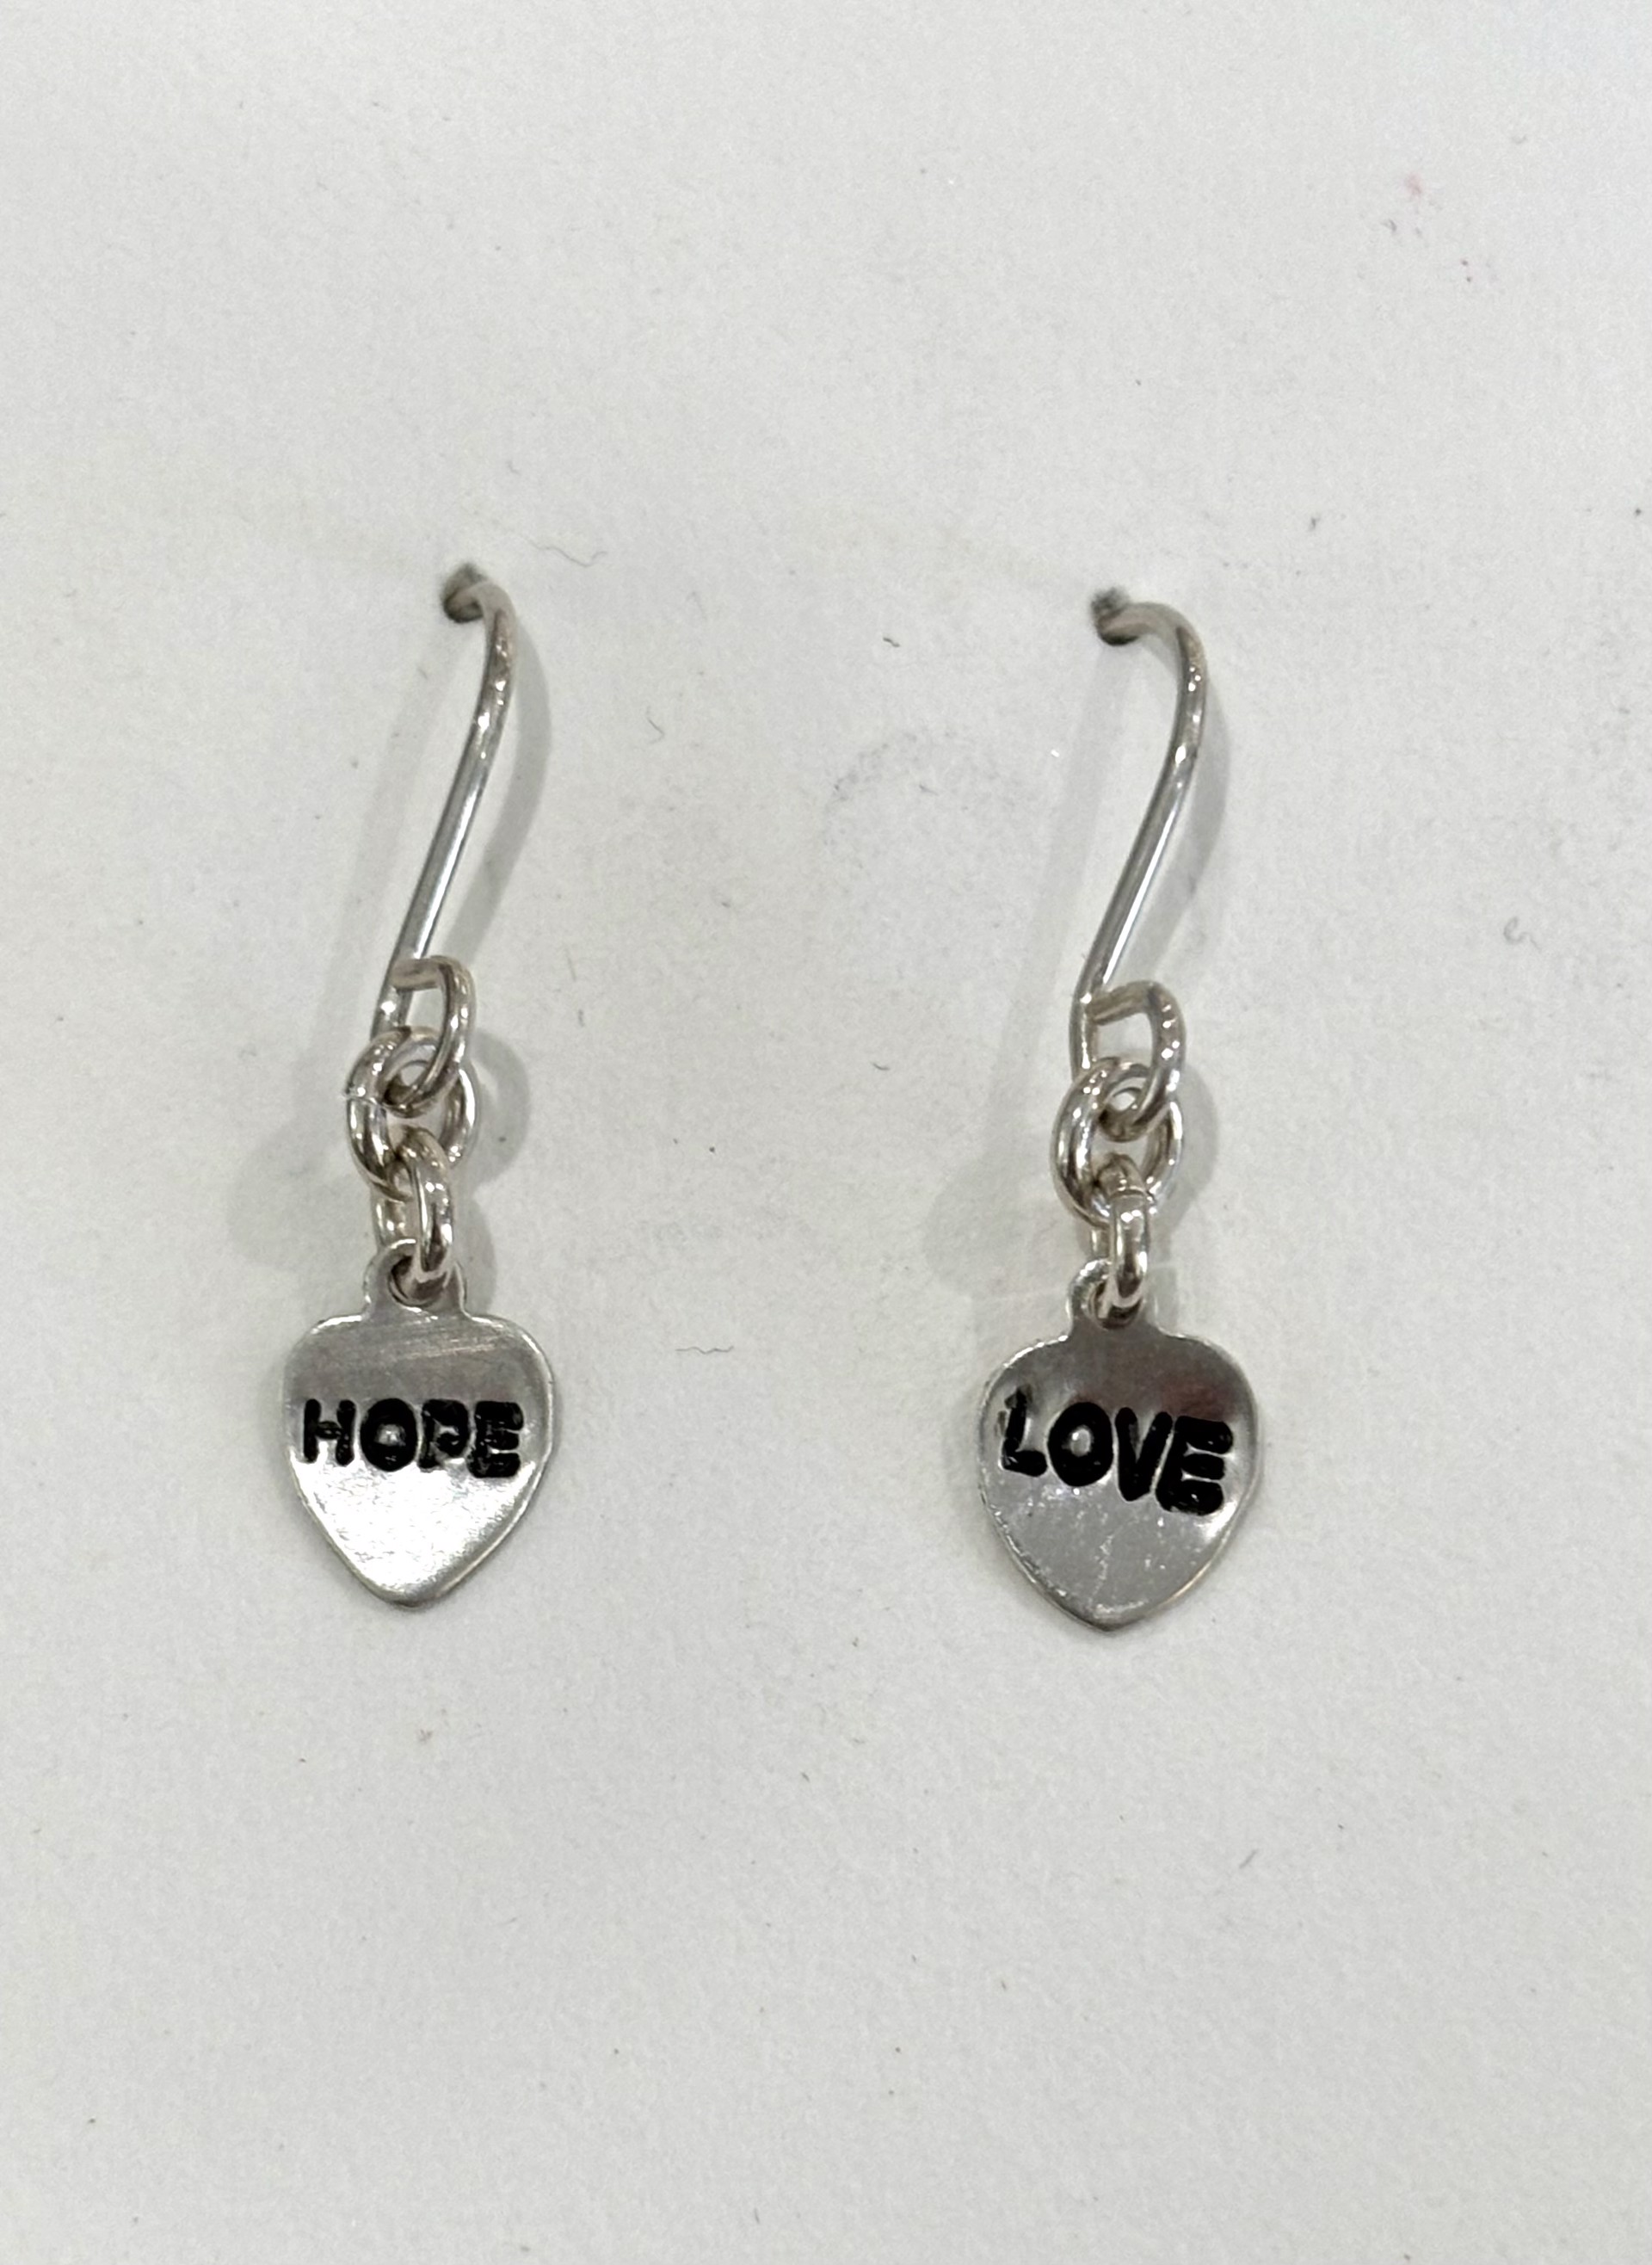 Hope and Love Earrings by Emelie Hebert